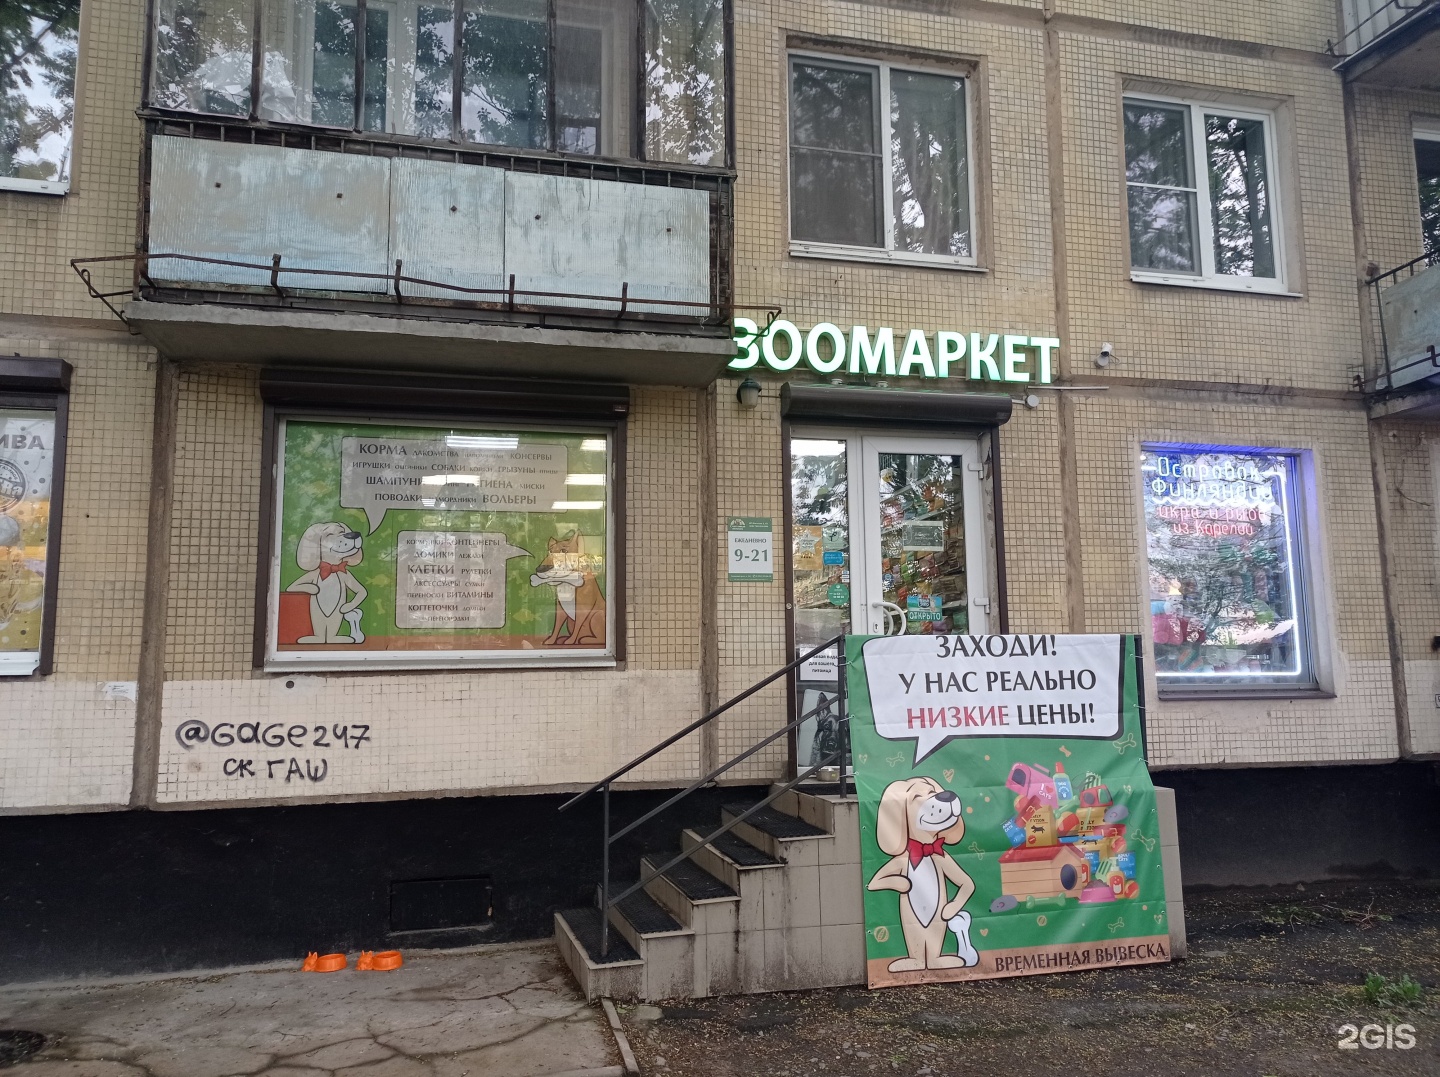 Счастливый Питомец Магазин В Санкт Петербурге